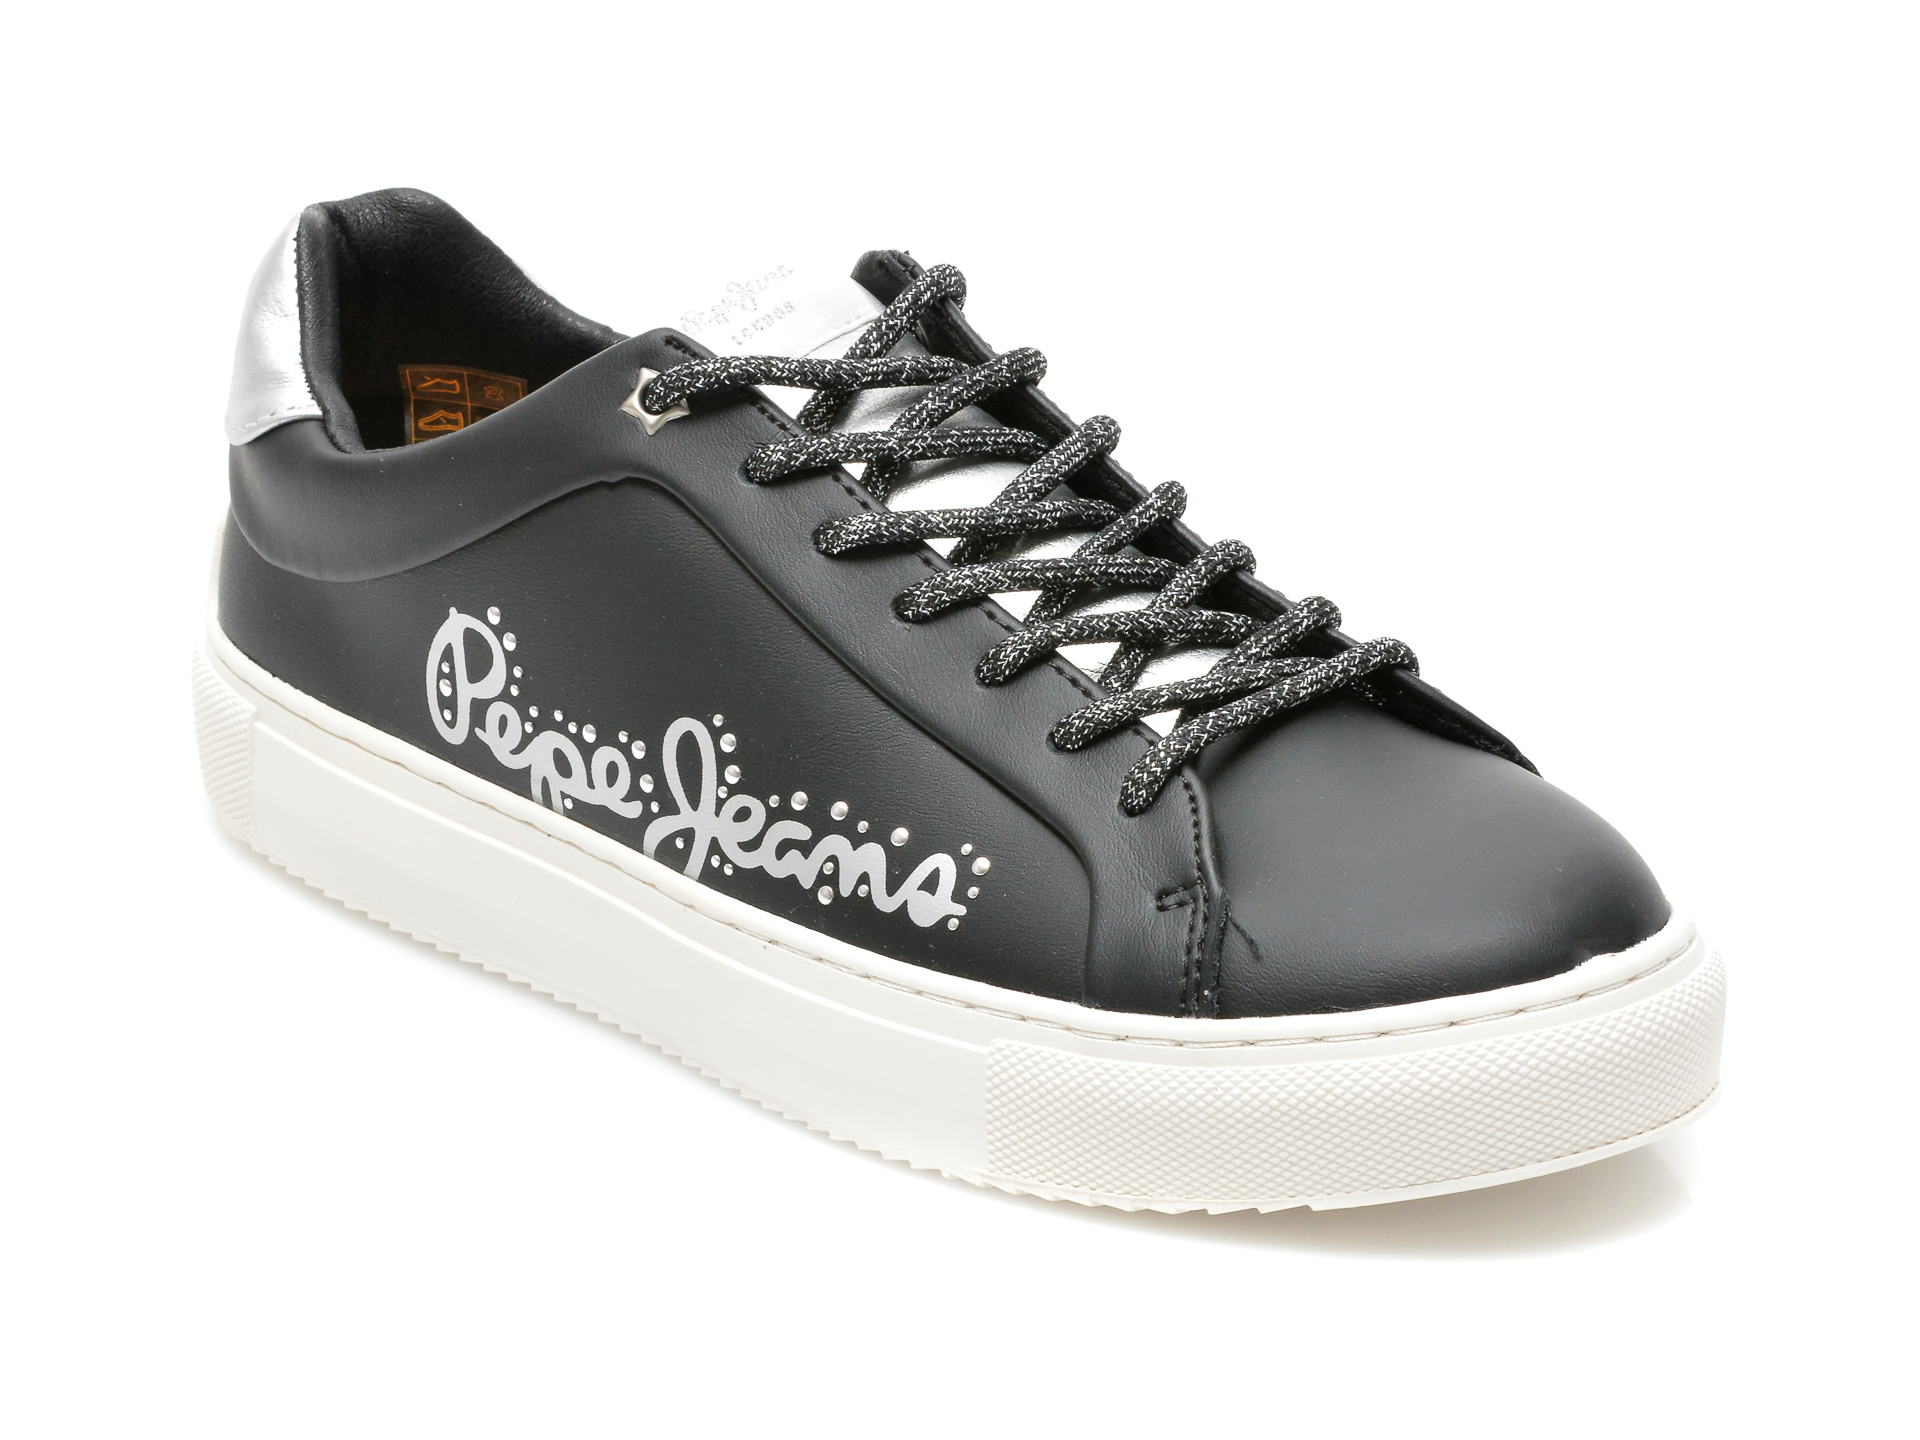 Pantofi sport PEPE JEANS negri, LS31200, din piele naturala otter.ro otter.ro